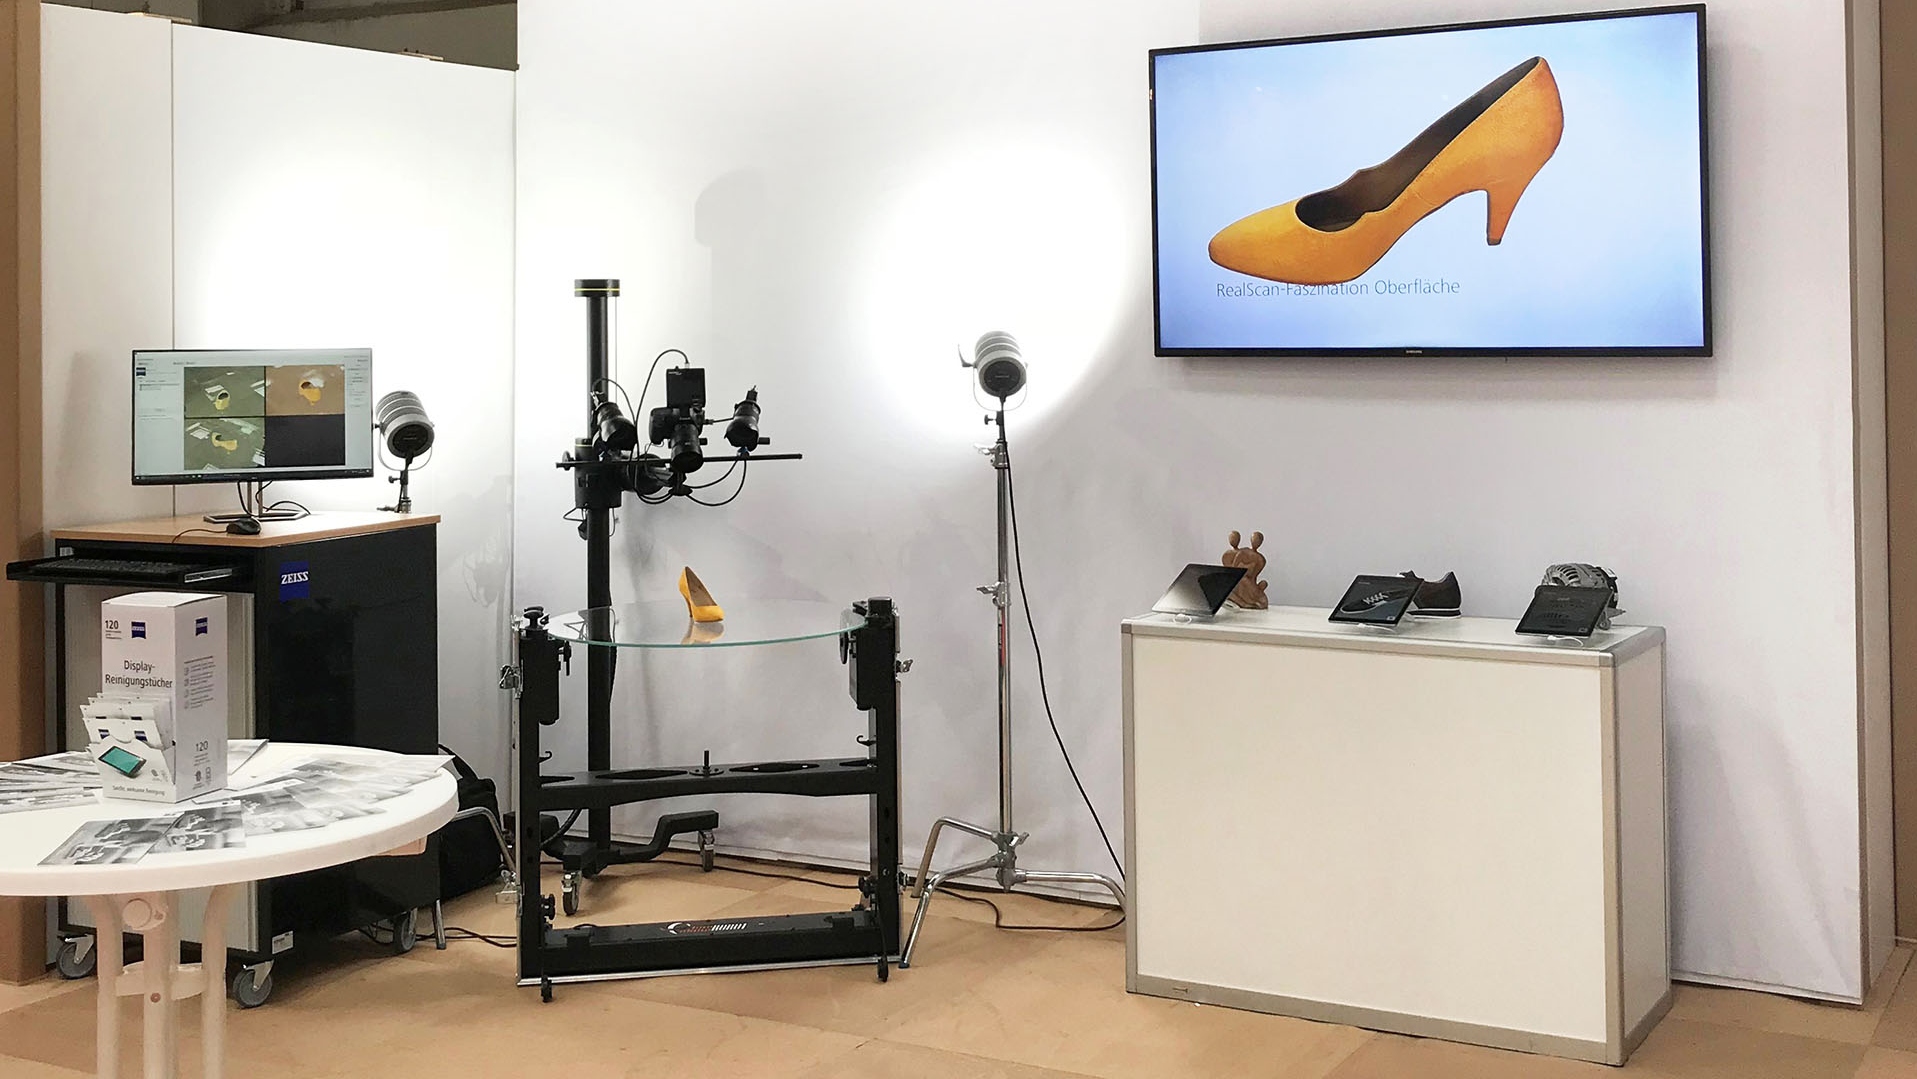 Fotorealistische 3D-Modelle: ZEISS präsentiert auf der Hannover Messe seinen ersten 3D-Scanner und 3D-Scan-Dienst.